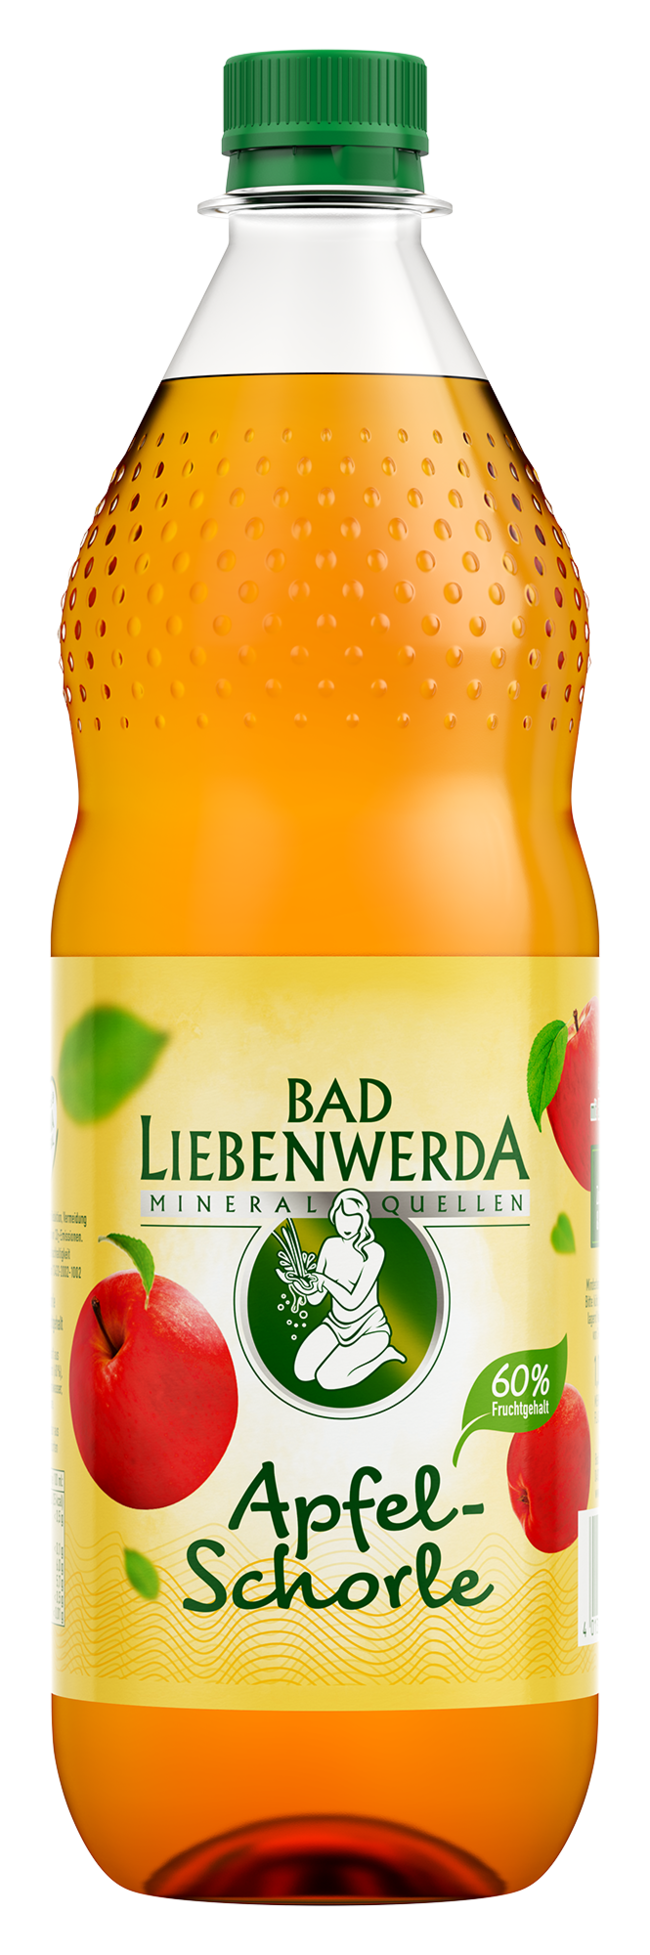 Bad Liebenwerda Apfelschorle 12 x 1,0 l PET